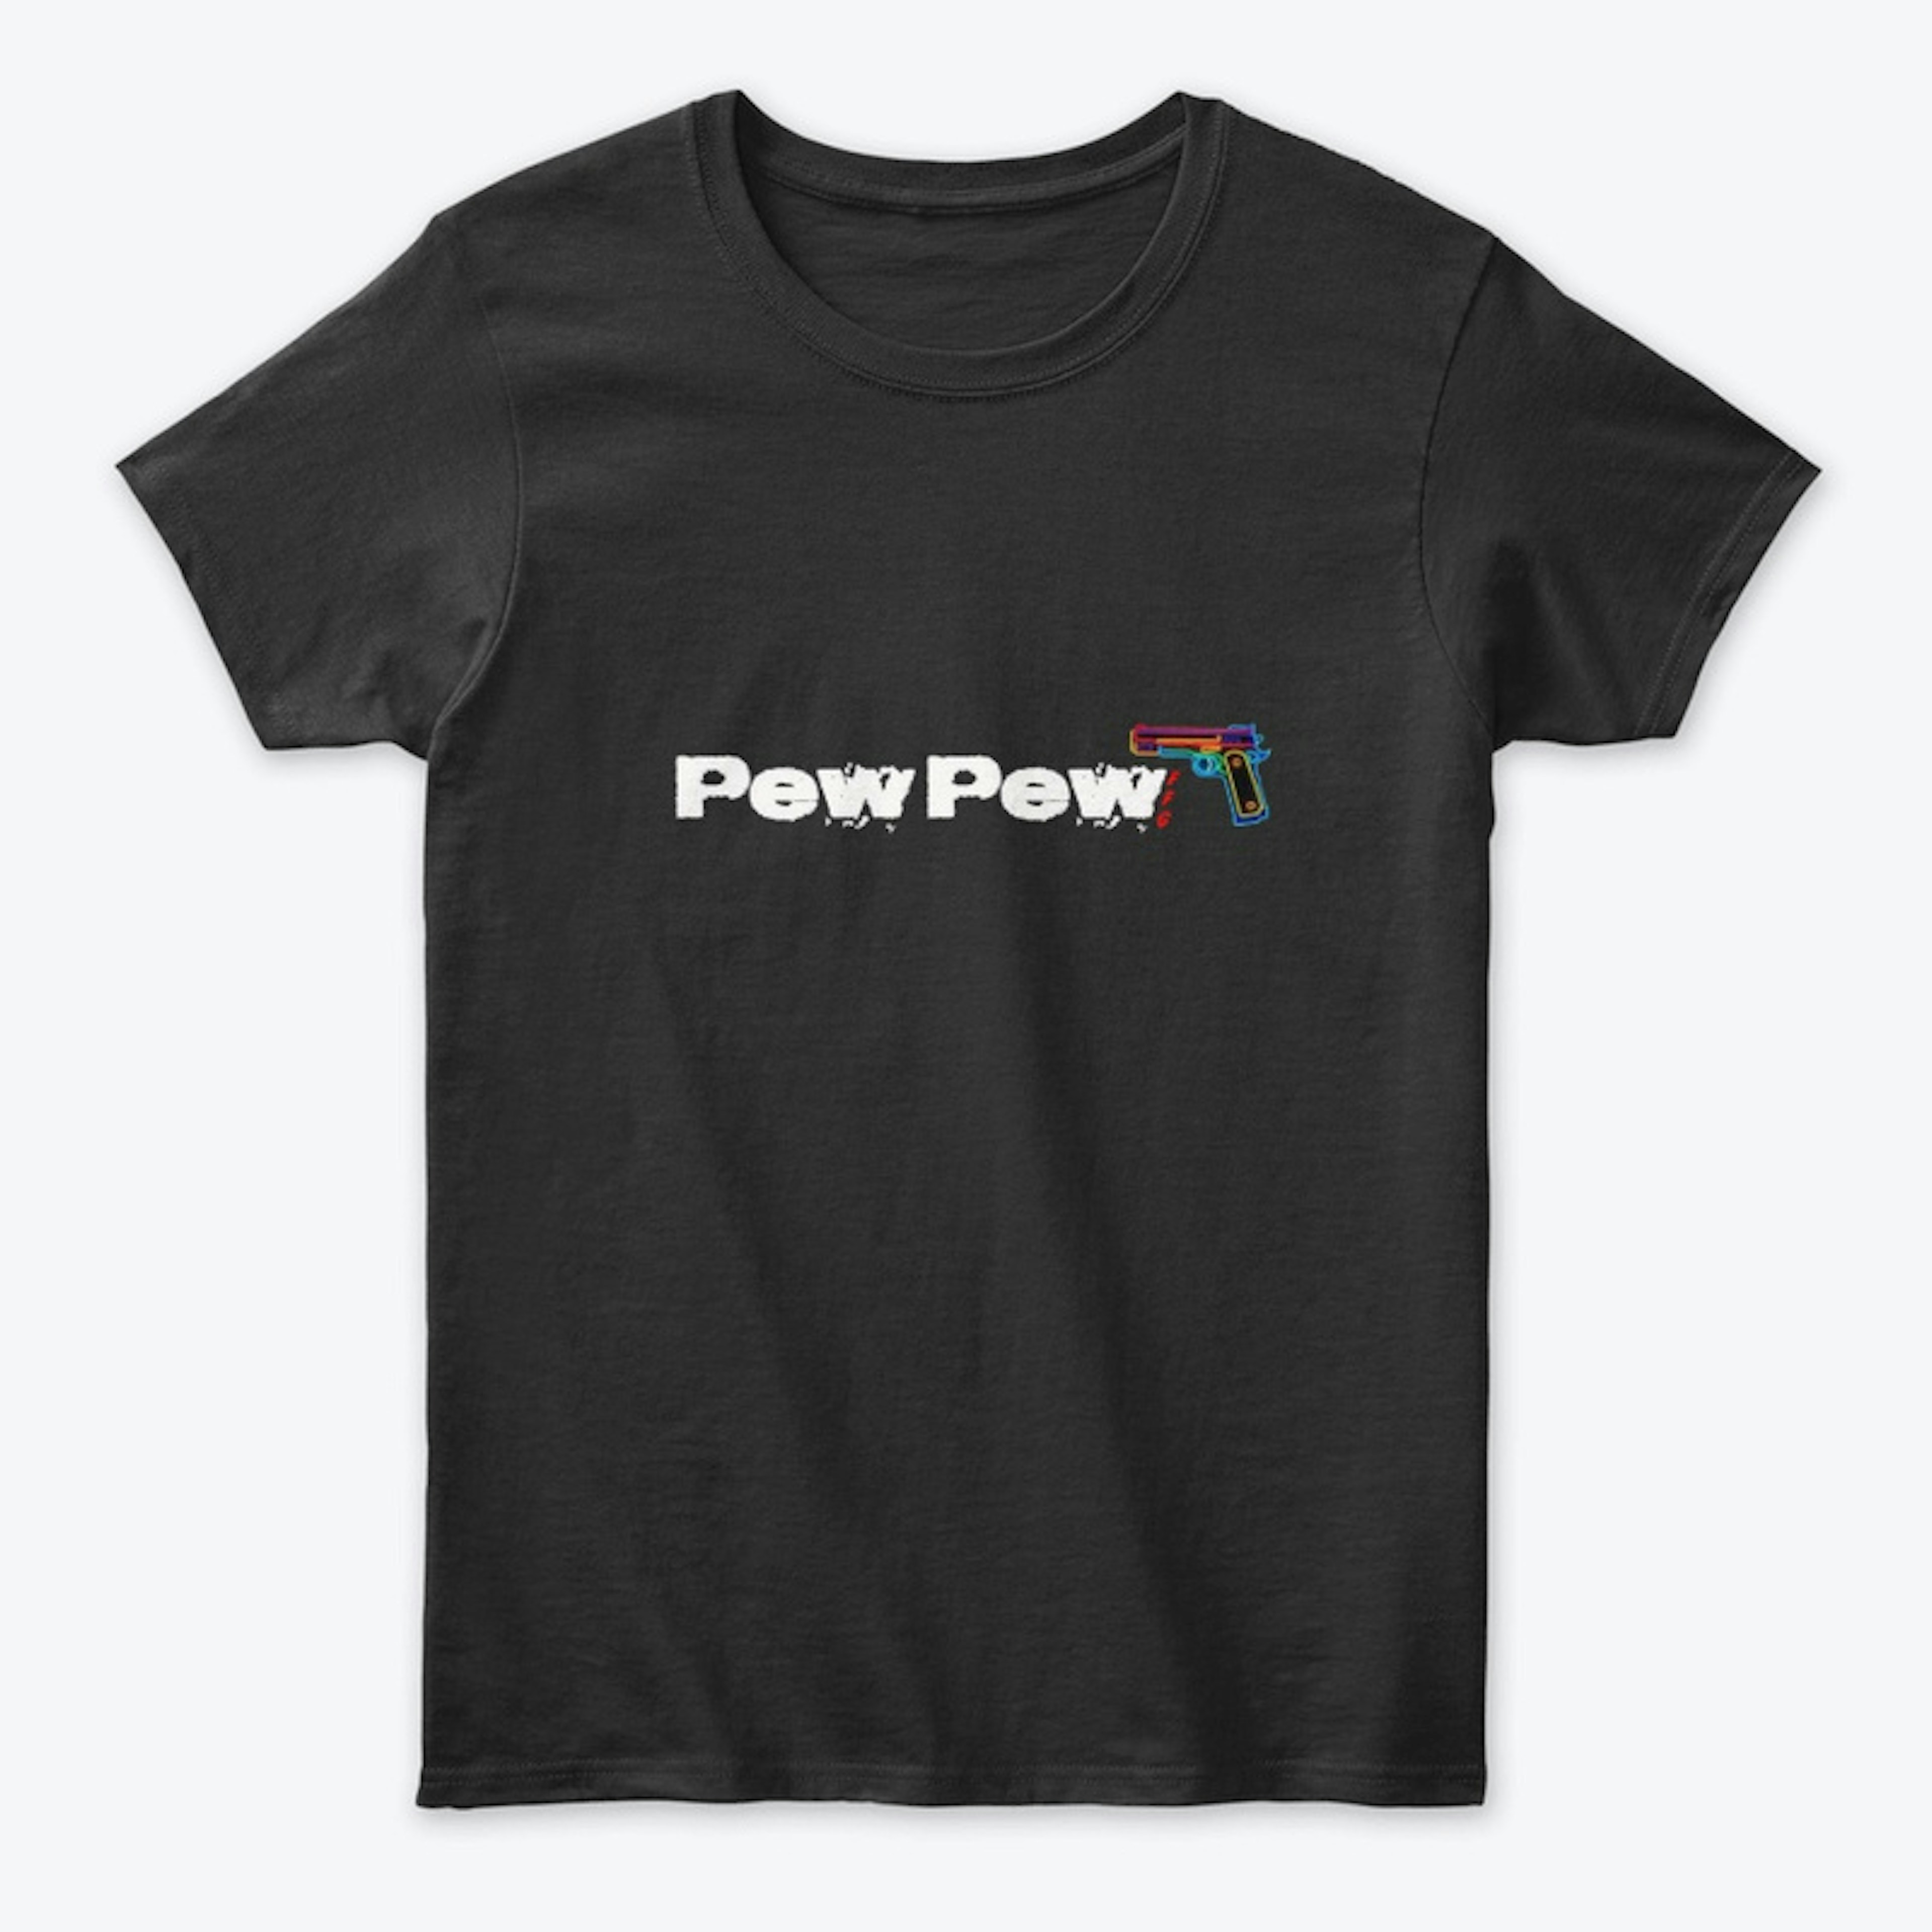 Pew Pew on dark